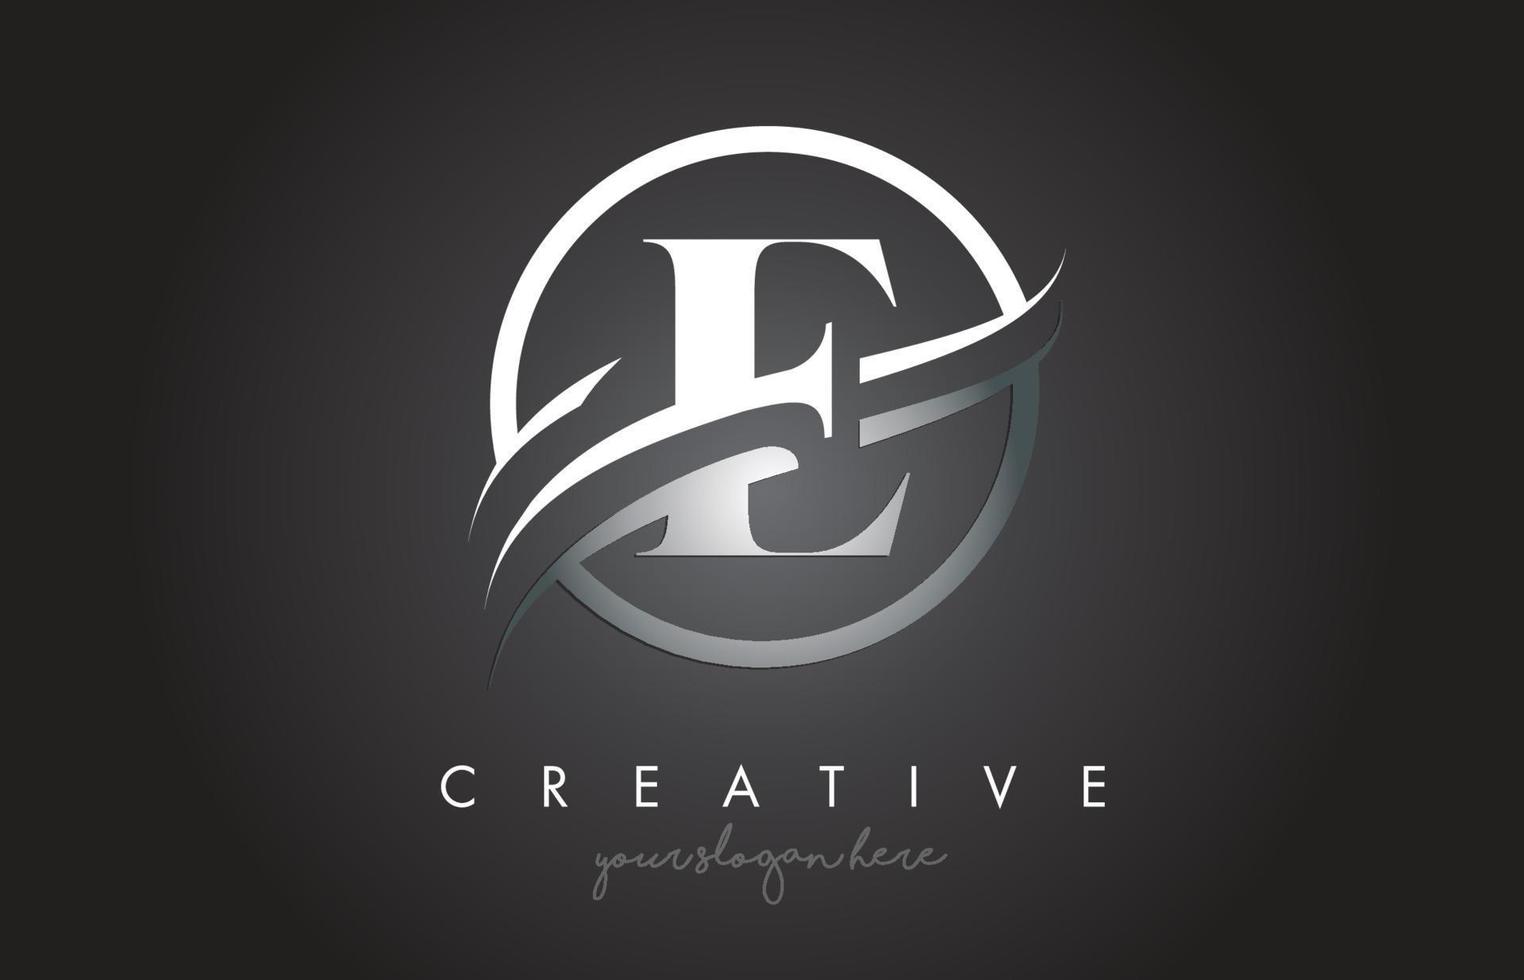 Diseño de logotipo de letra e con borde de swoosh de acero circular y diseño de icono creativo. vector